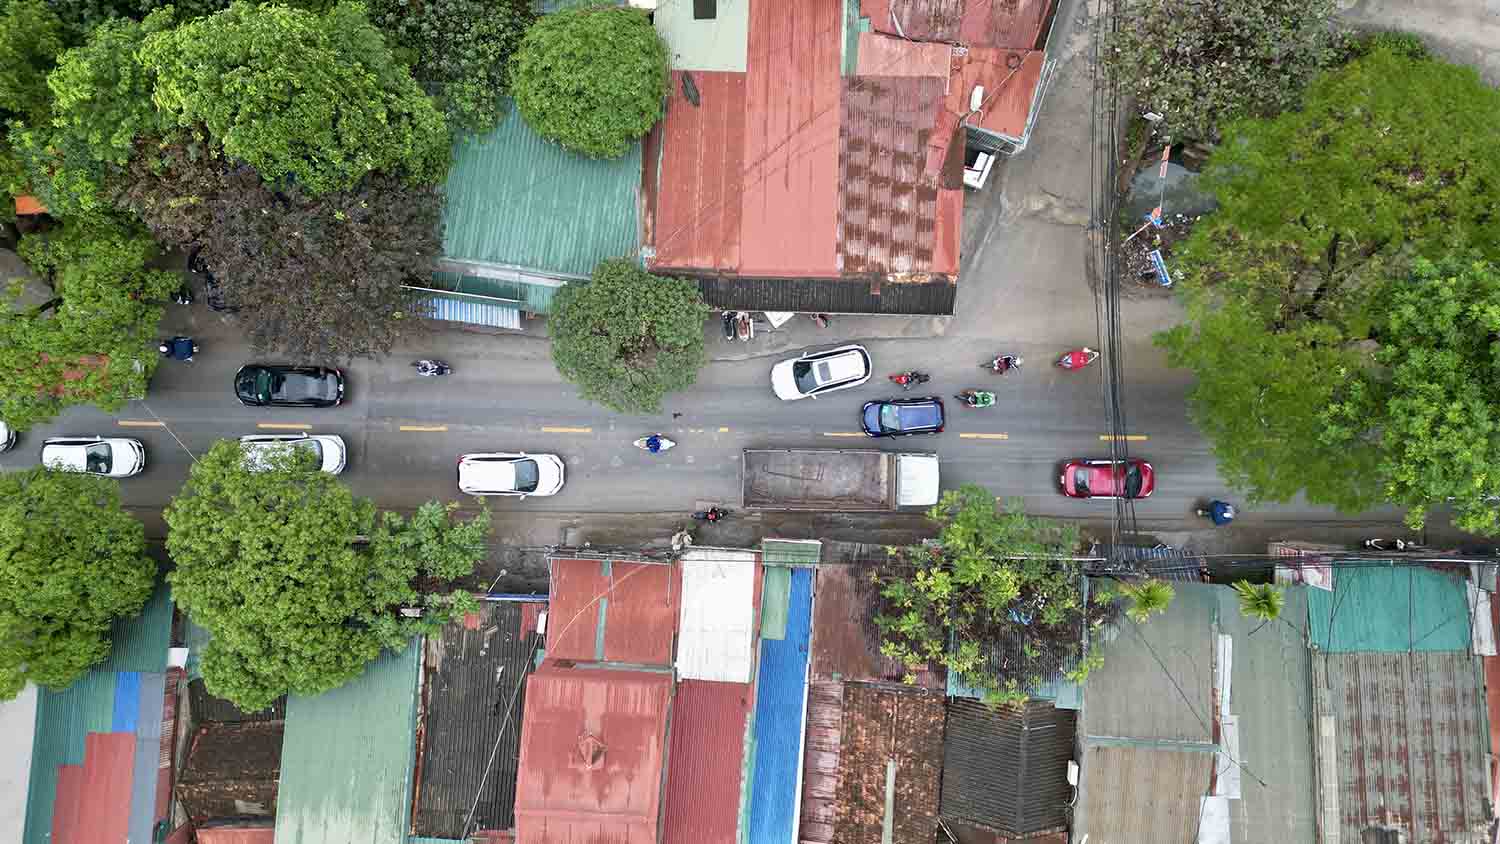 Theo tìm hiểu của Lao Động, để giải quyết “điểm đen” tai nạn giao thông tại đây, HĐND TP Hà Nội đã thống nhất thông qua chủ trương đầu tư, nâng cấp mở rộng đường 70 (đoạn từ đường Trịnh Văn Bô đến hết quận Nam Từ Liêm).